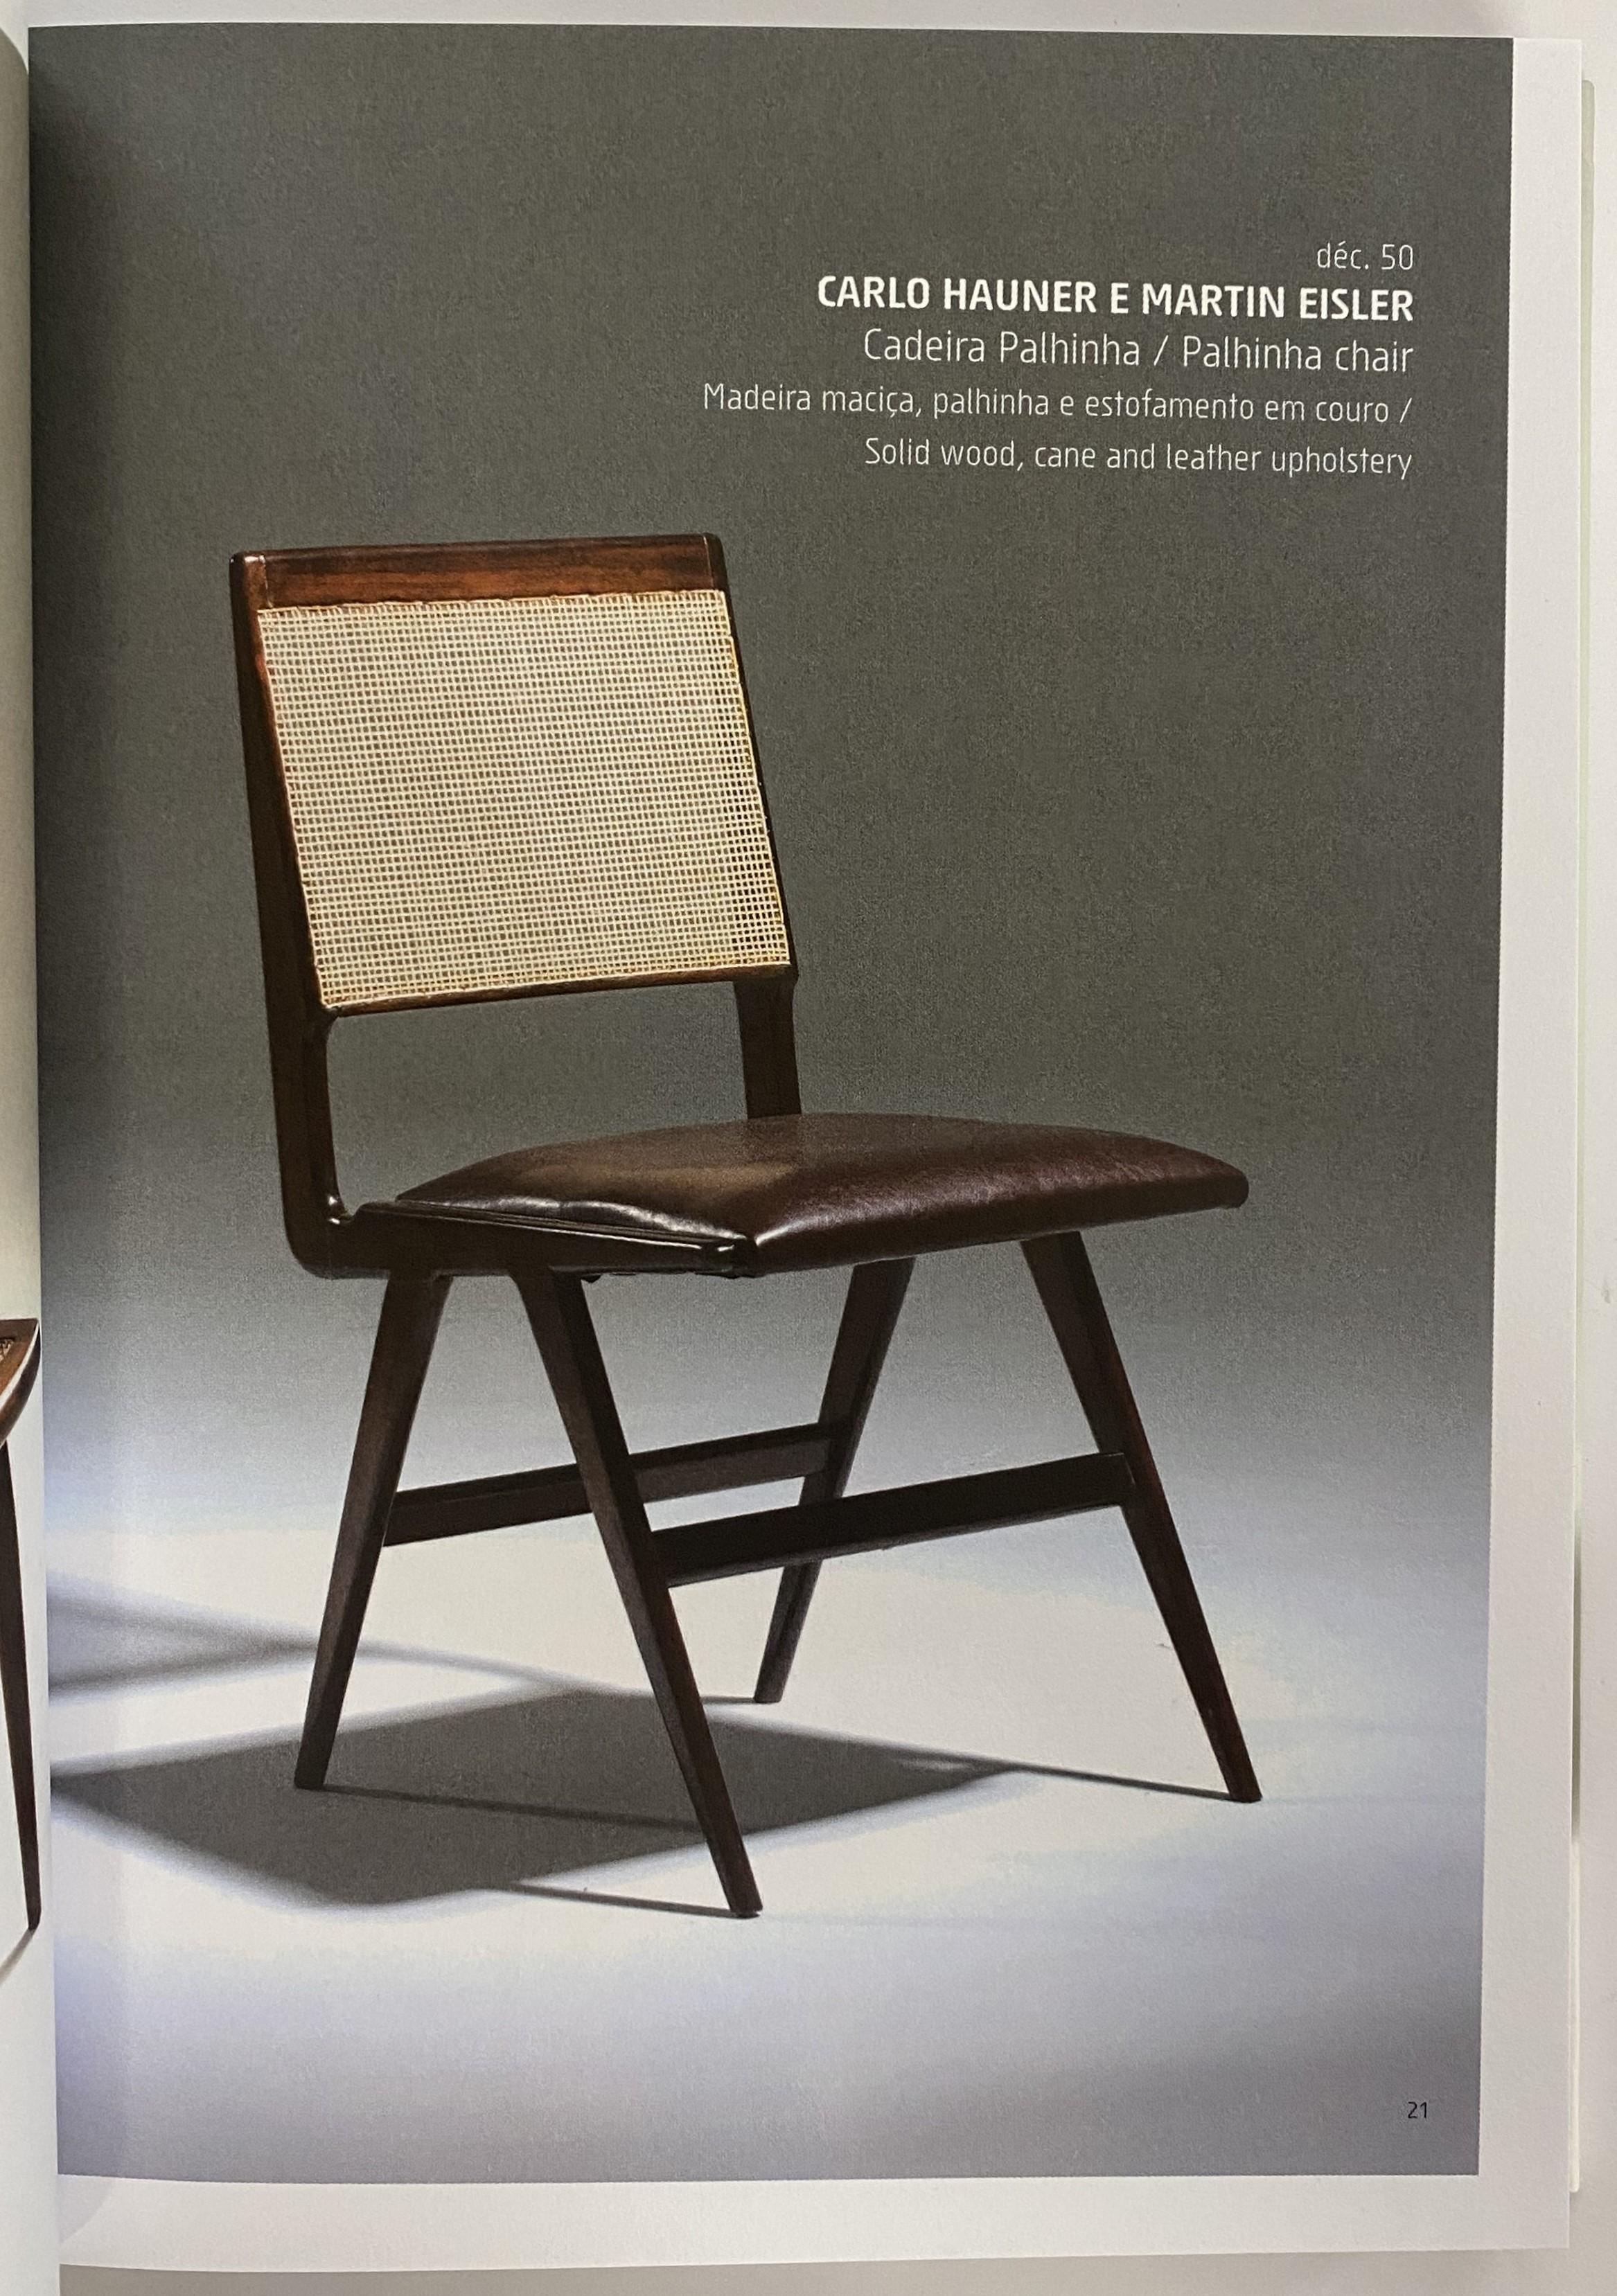 20th Century Brazilian Furniture Design editor Otavio Nazareth (Book) For Sale